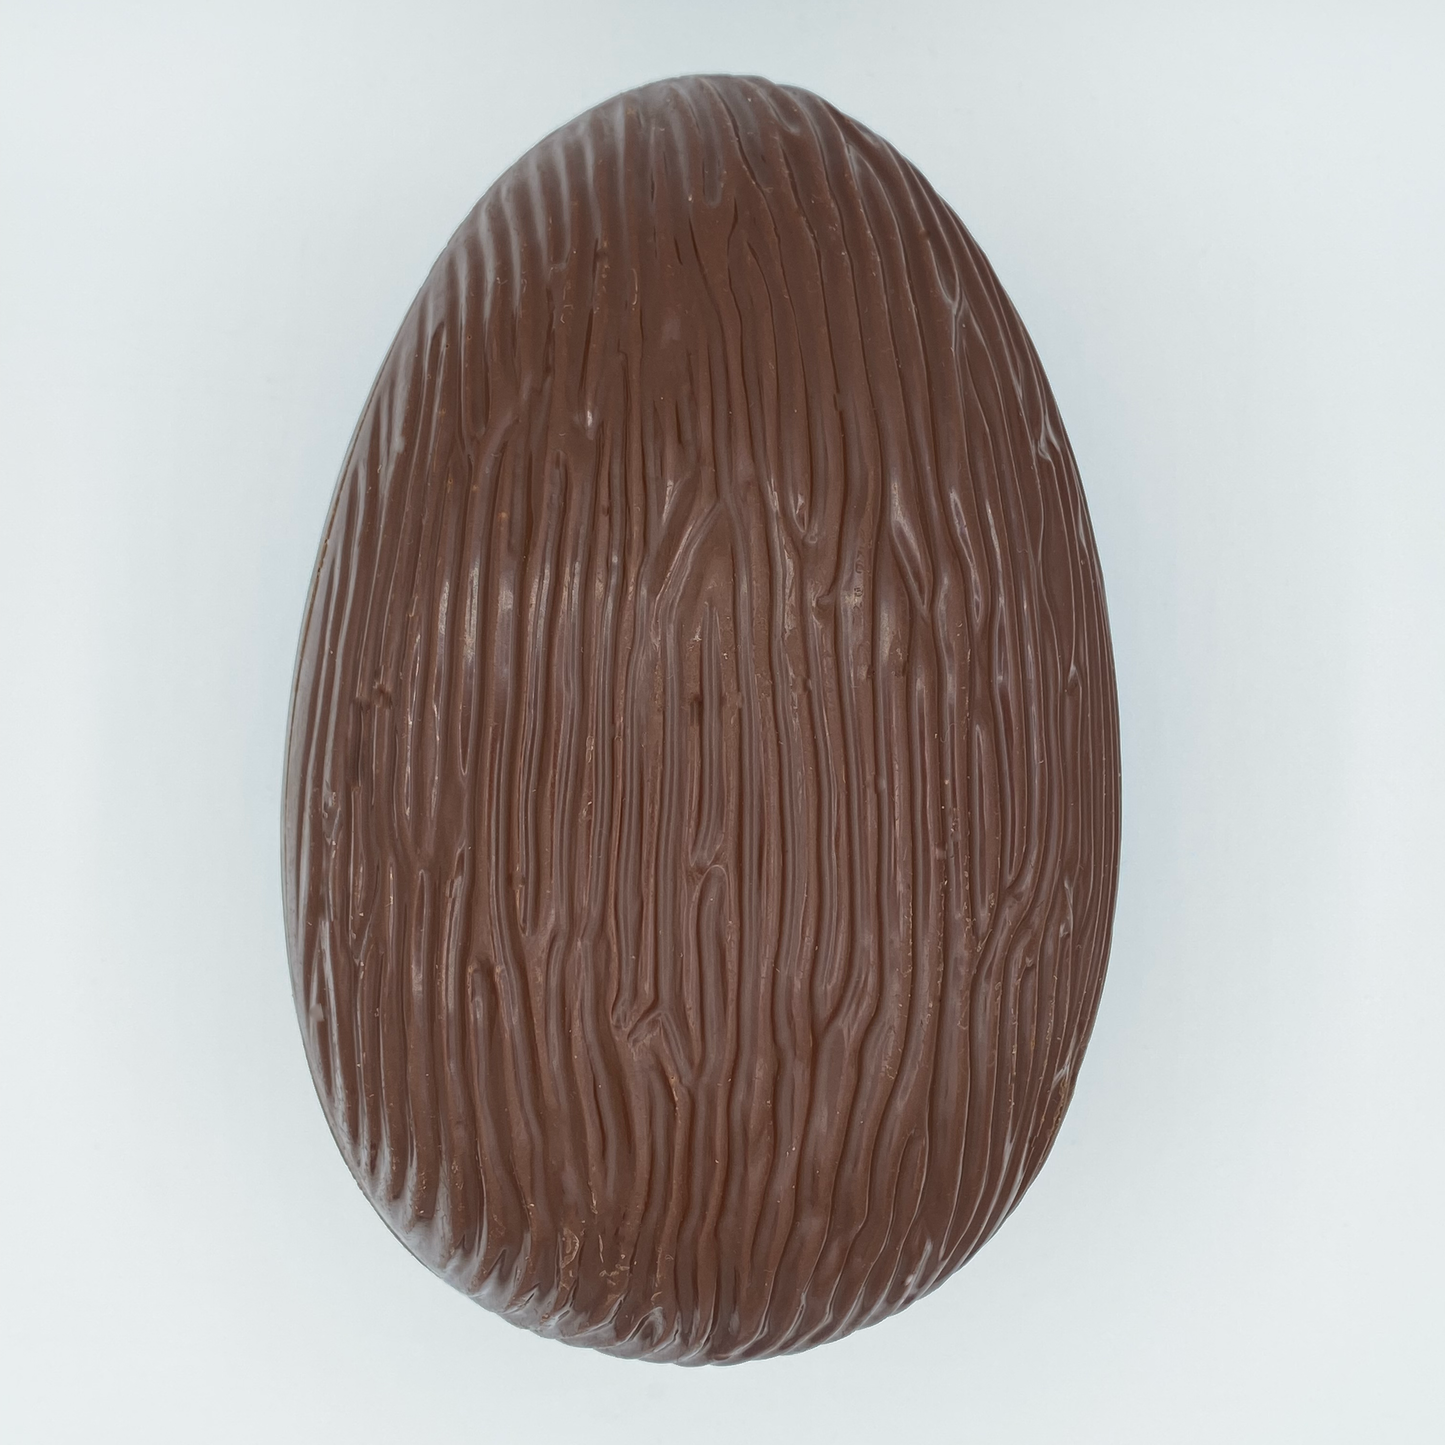 Big Easter Egg - 280g